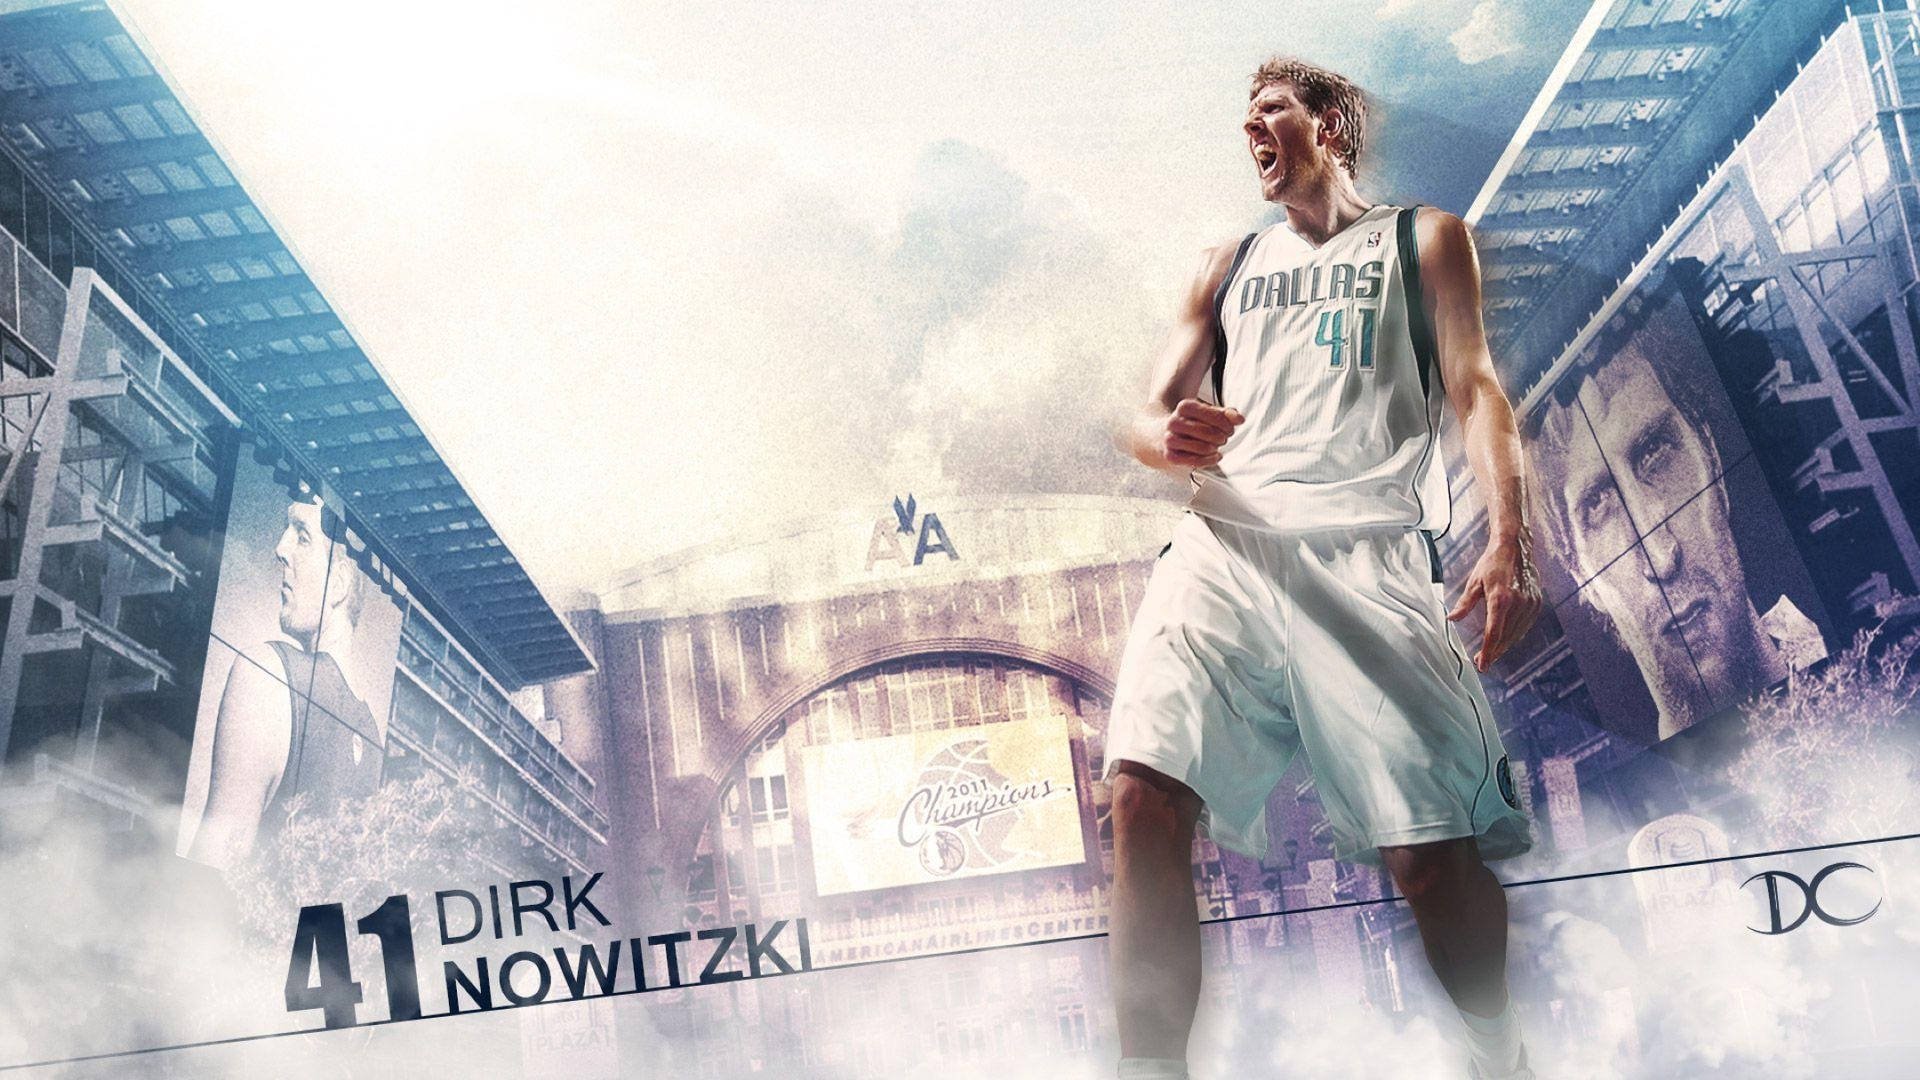 2011nba-mästaren Dirk Nowitzki. Wallpaper